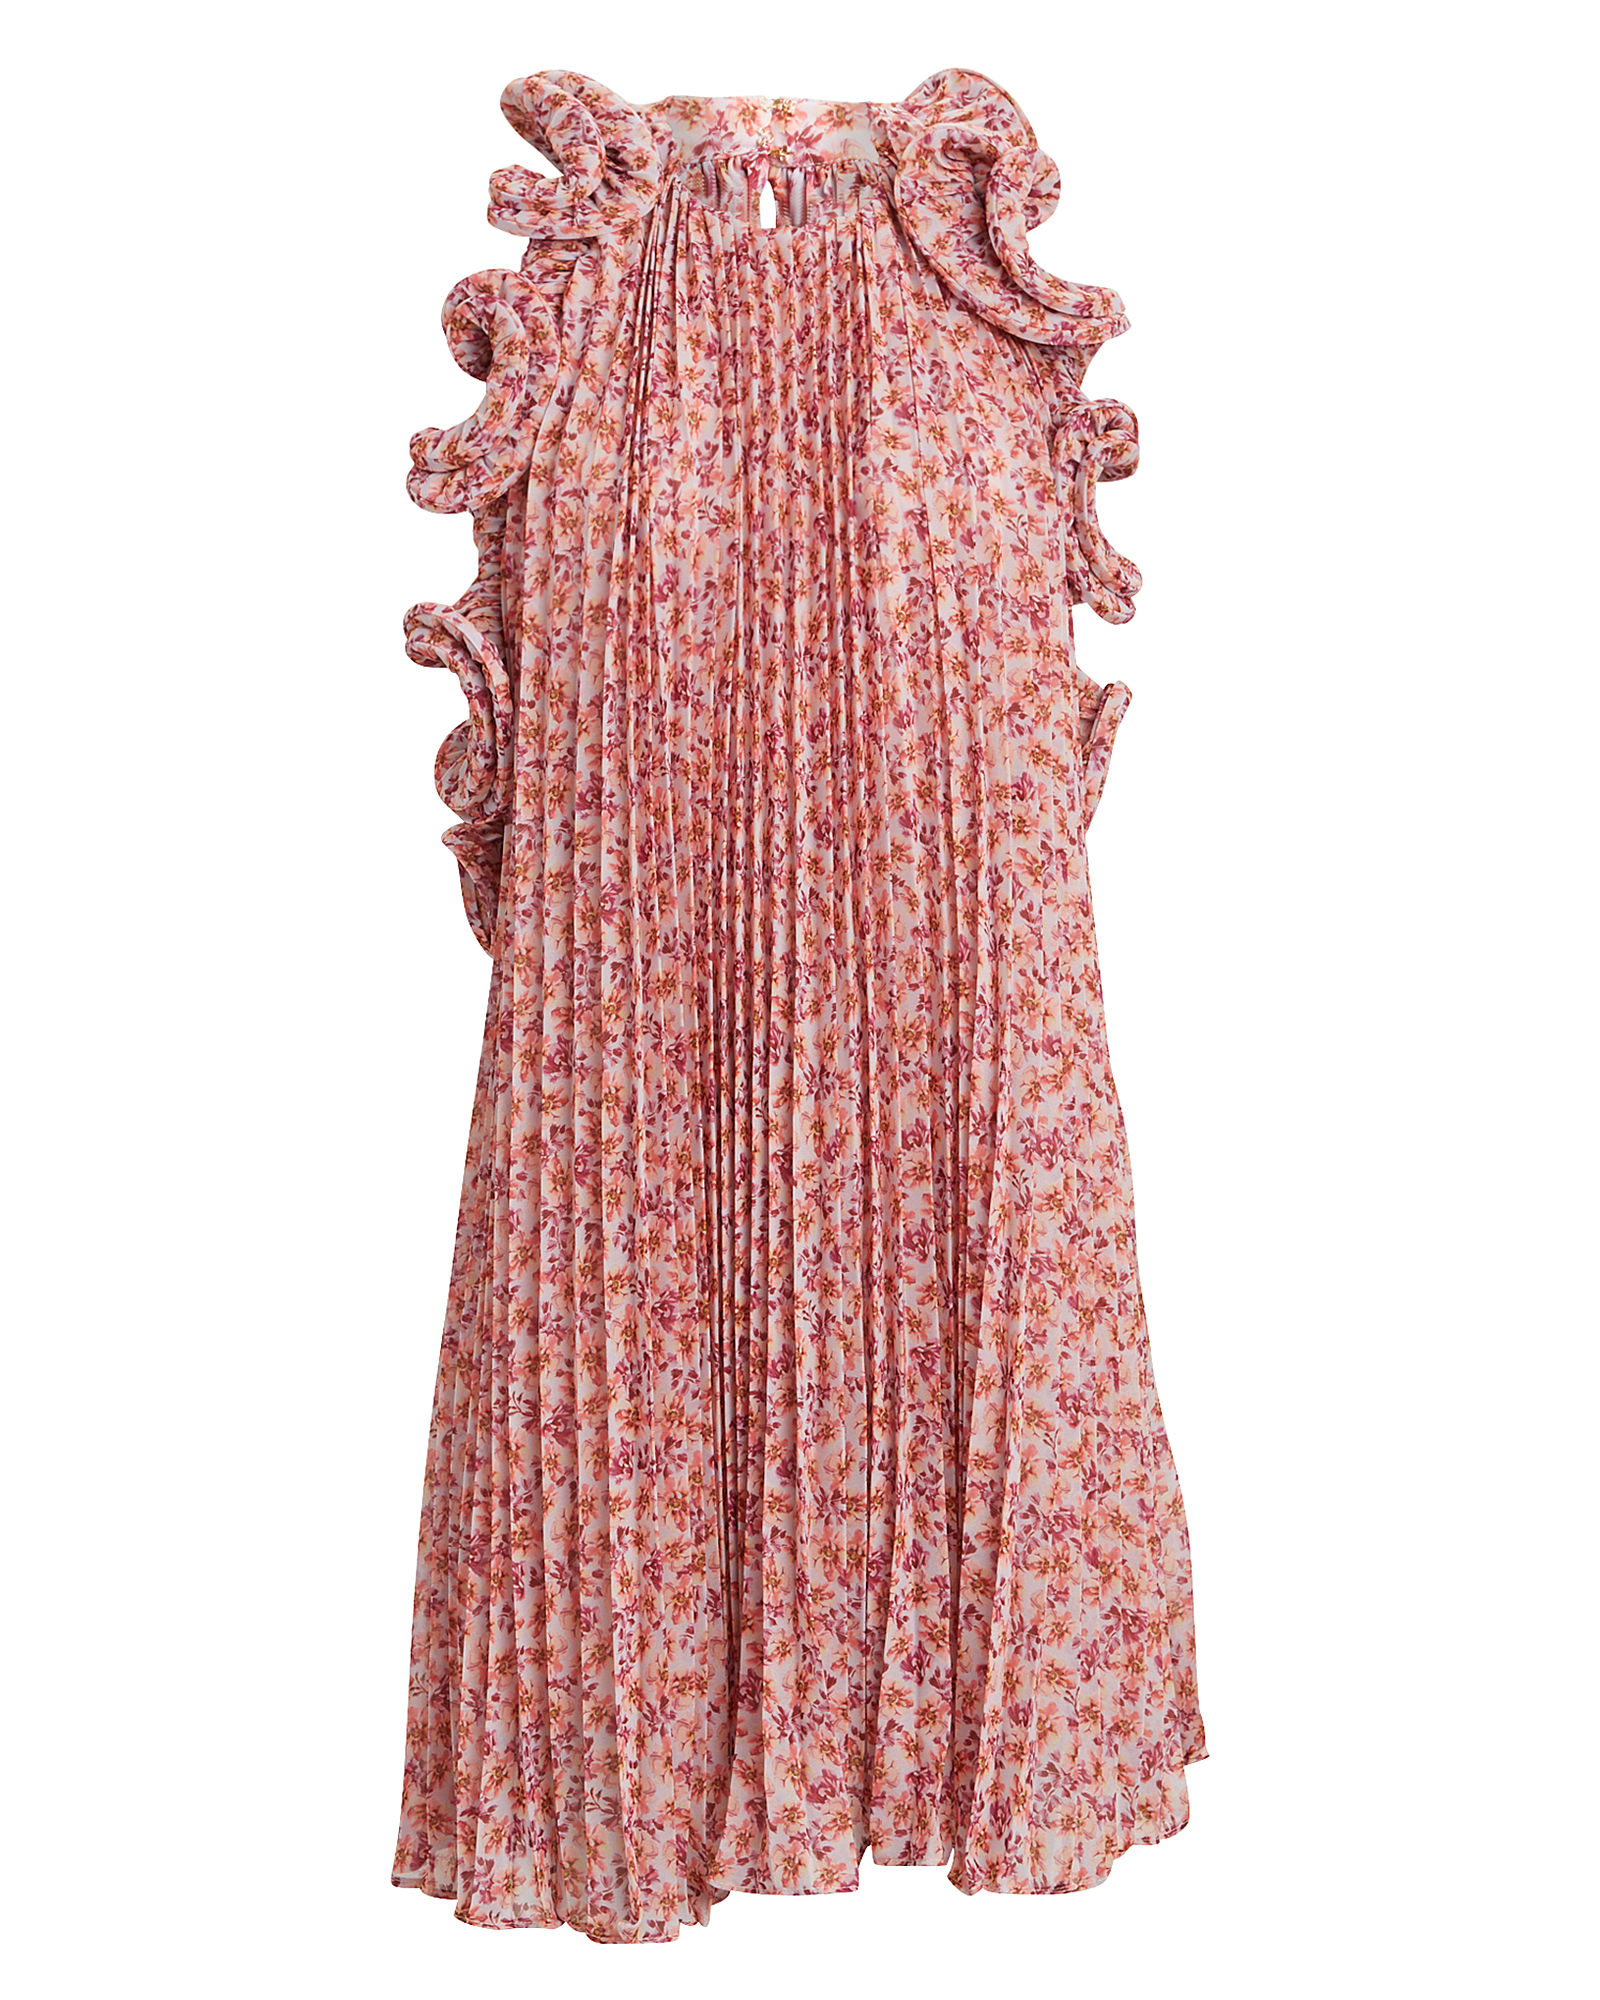 AMUR Mimi Ruffled Floral Print Dress | INTERMIX®